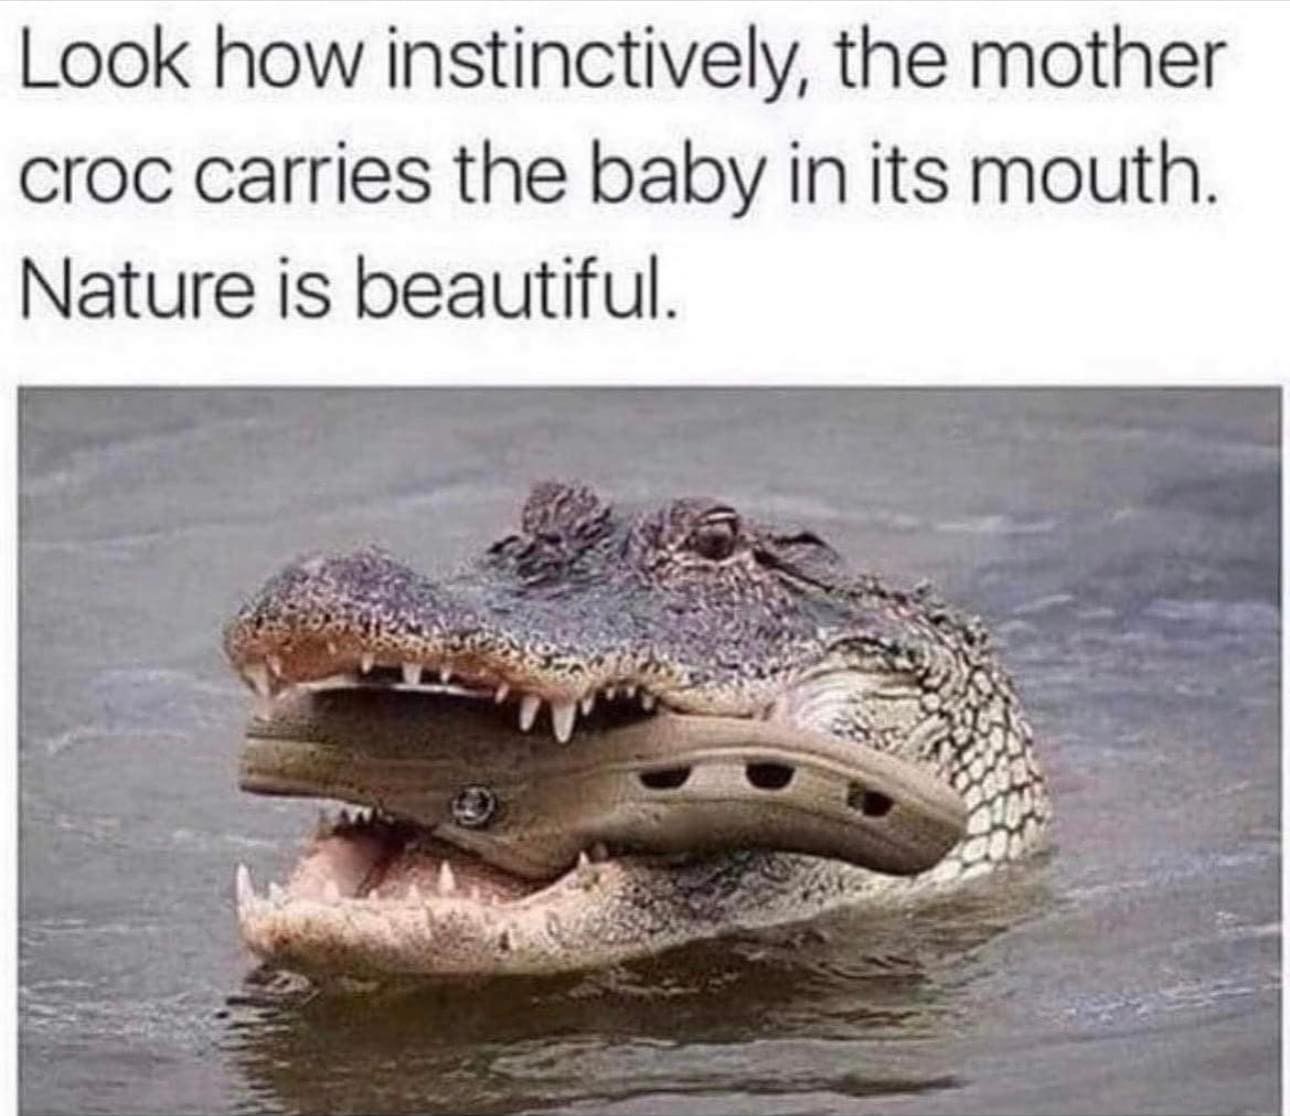 Foto de um crocodilo com um sapato croc na boca, e a legenda 